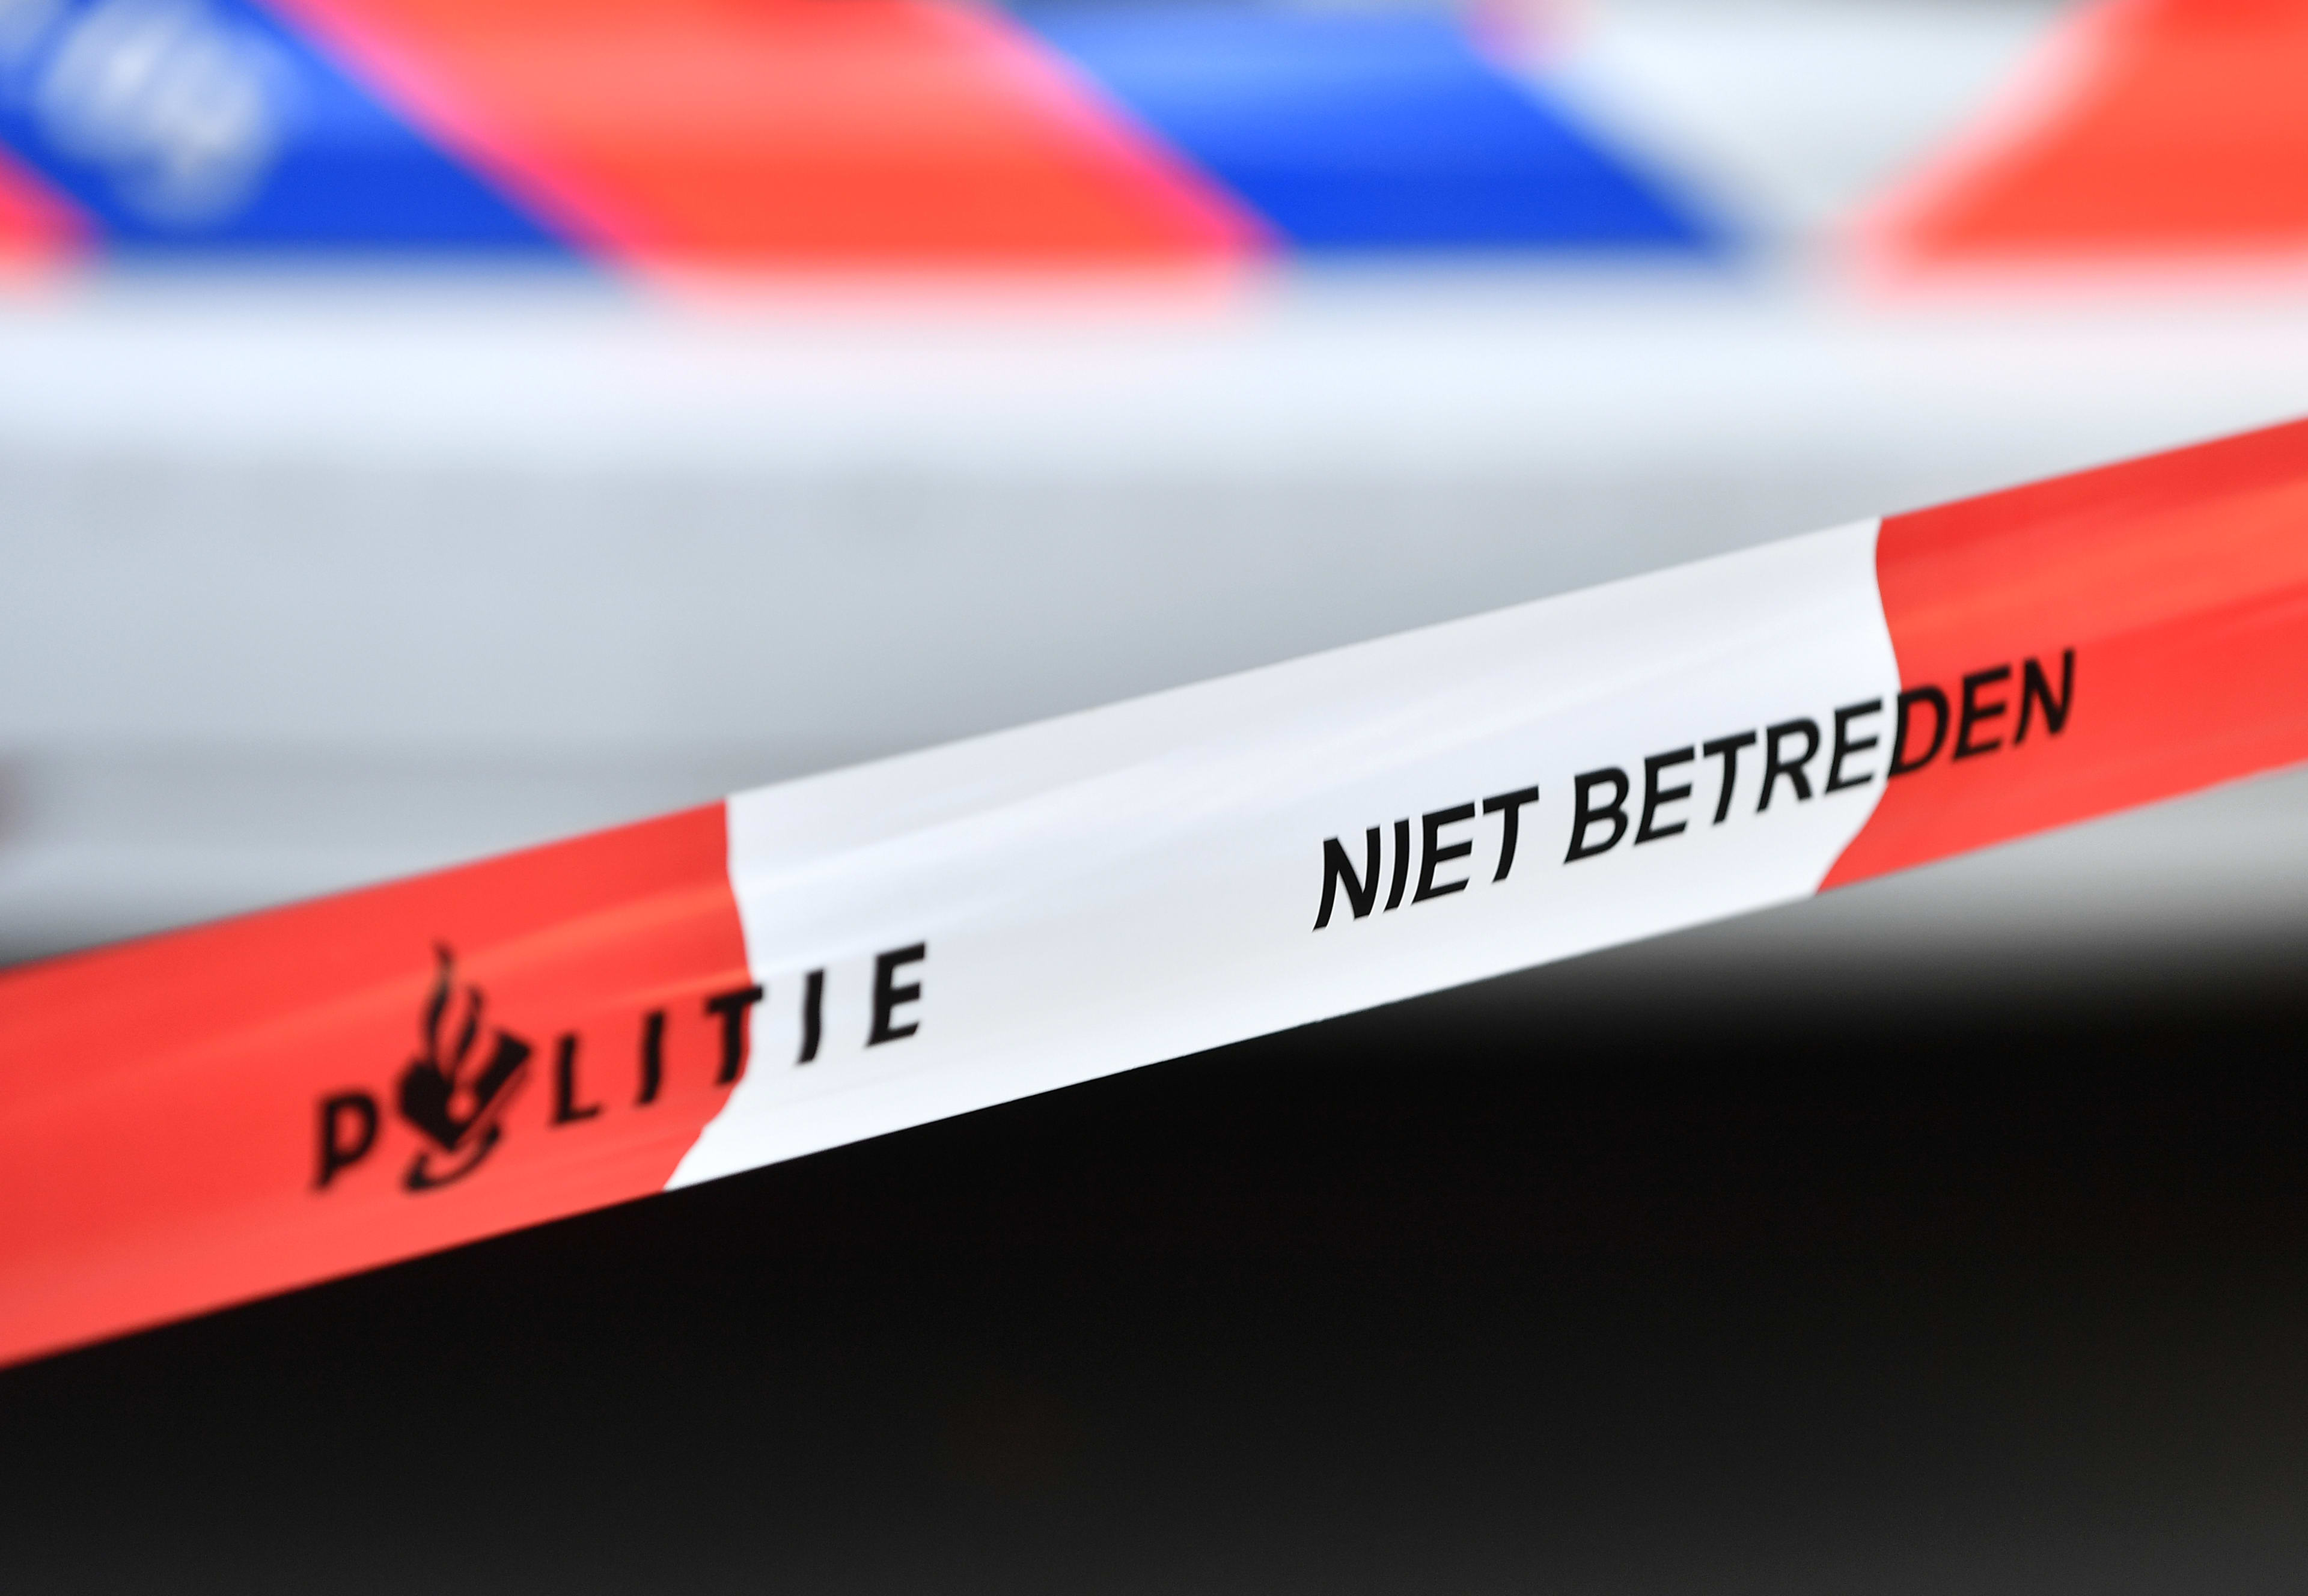 Mannen verwachten dates in Leiden, maar worden gegijzeld en beroofd